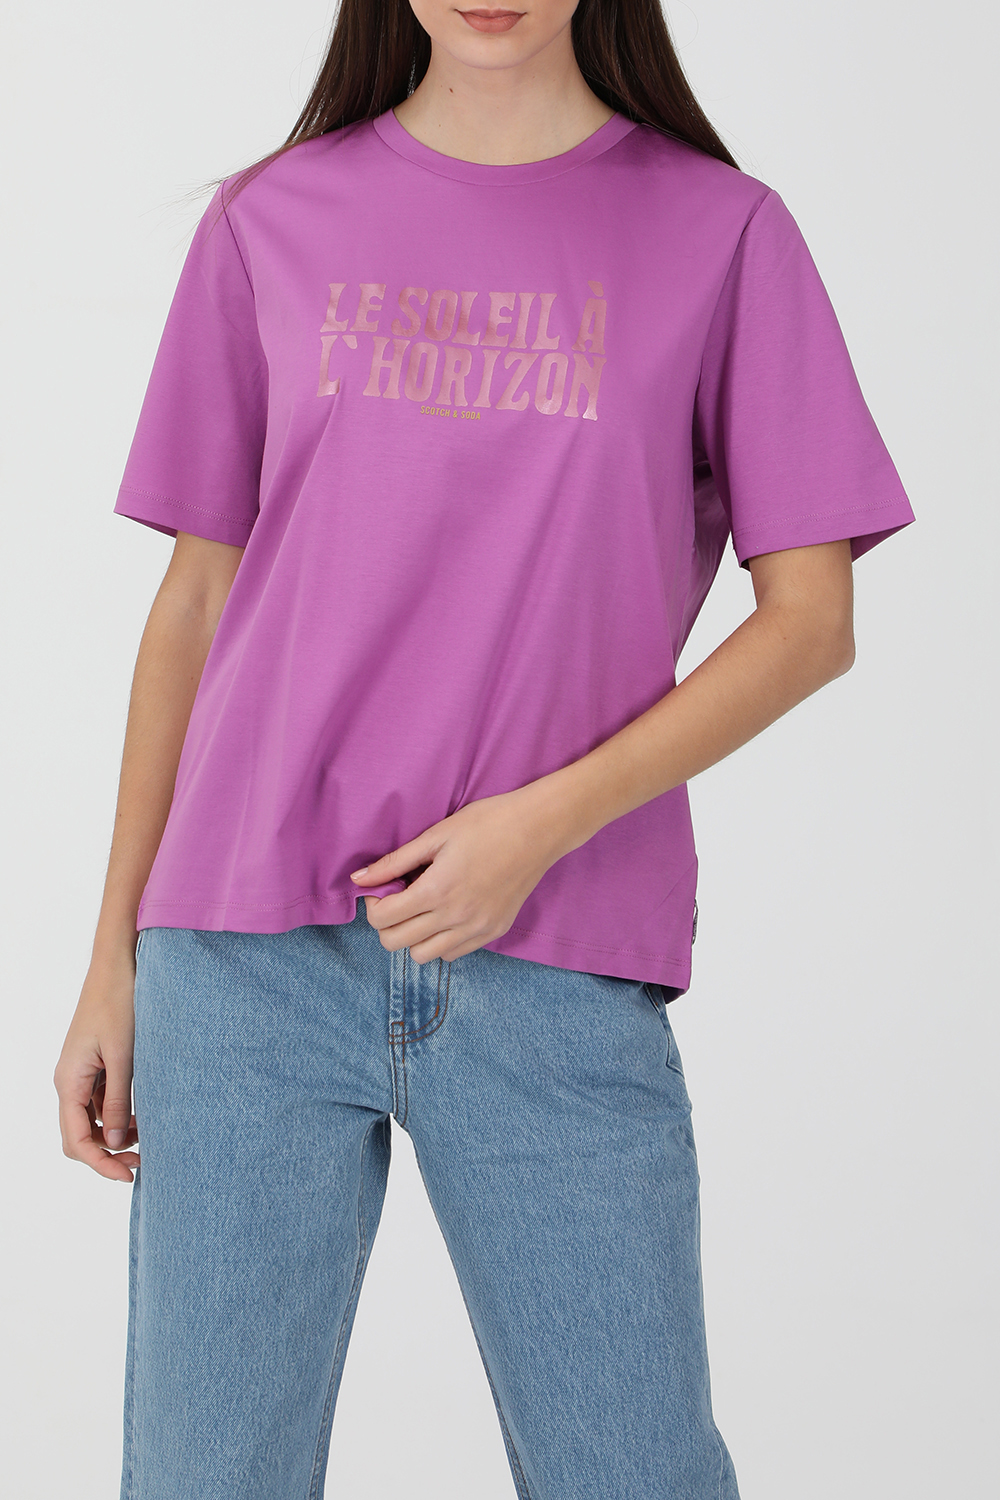 Γυναικεία/Ρούχα/Μπλούζες/Κοντομάνικες SCOTCH & SODA - Γυναικεία κοντομάνικη μπλούζα SCOTCH & SODA μοβ